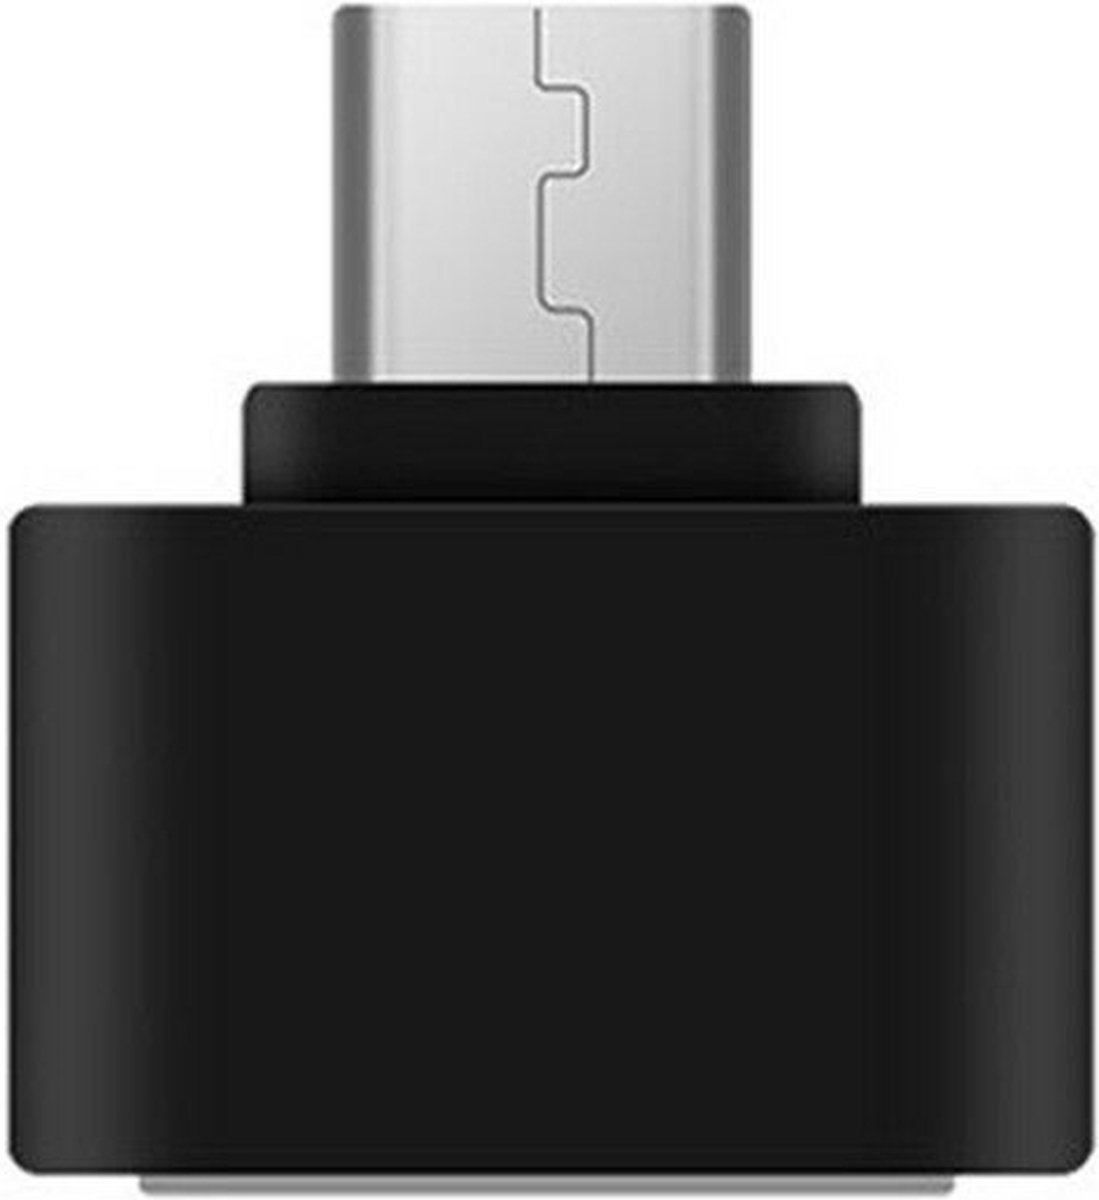 3 Stuks - USB C naar USB A converter - Universele USB Hub - OTG verloop